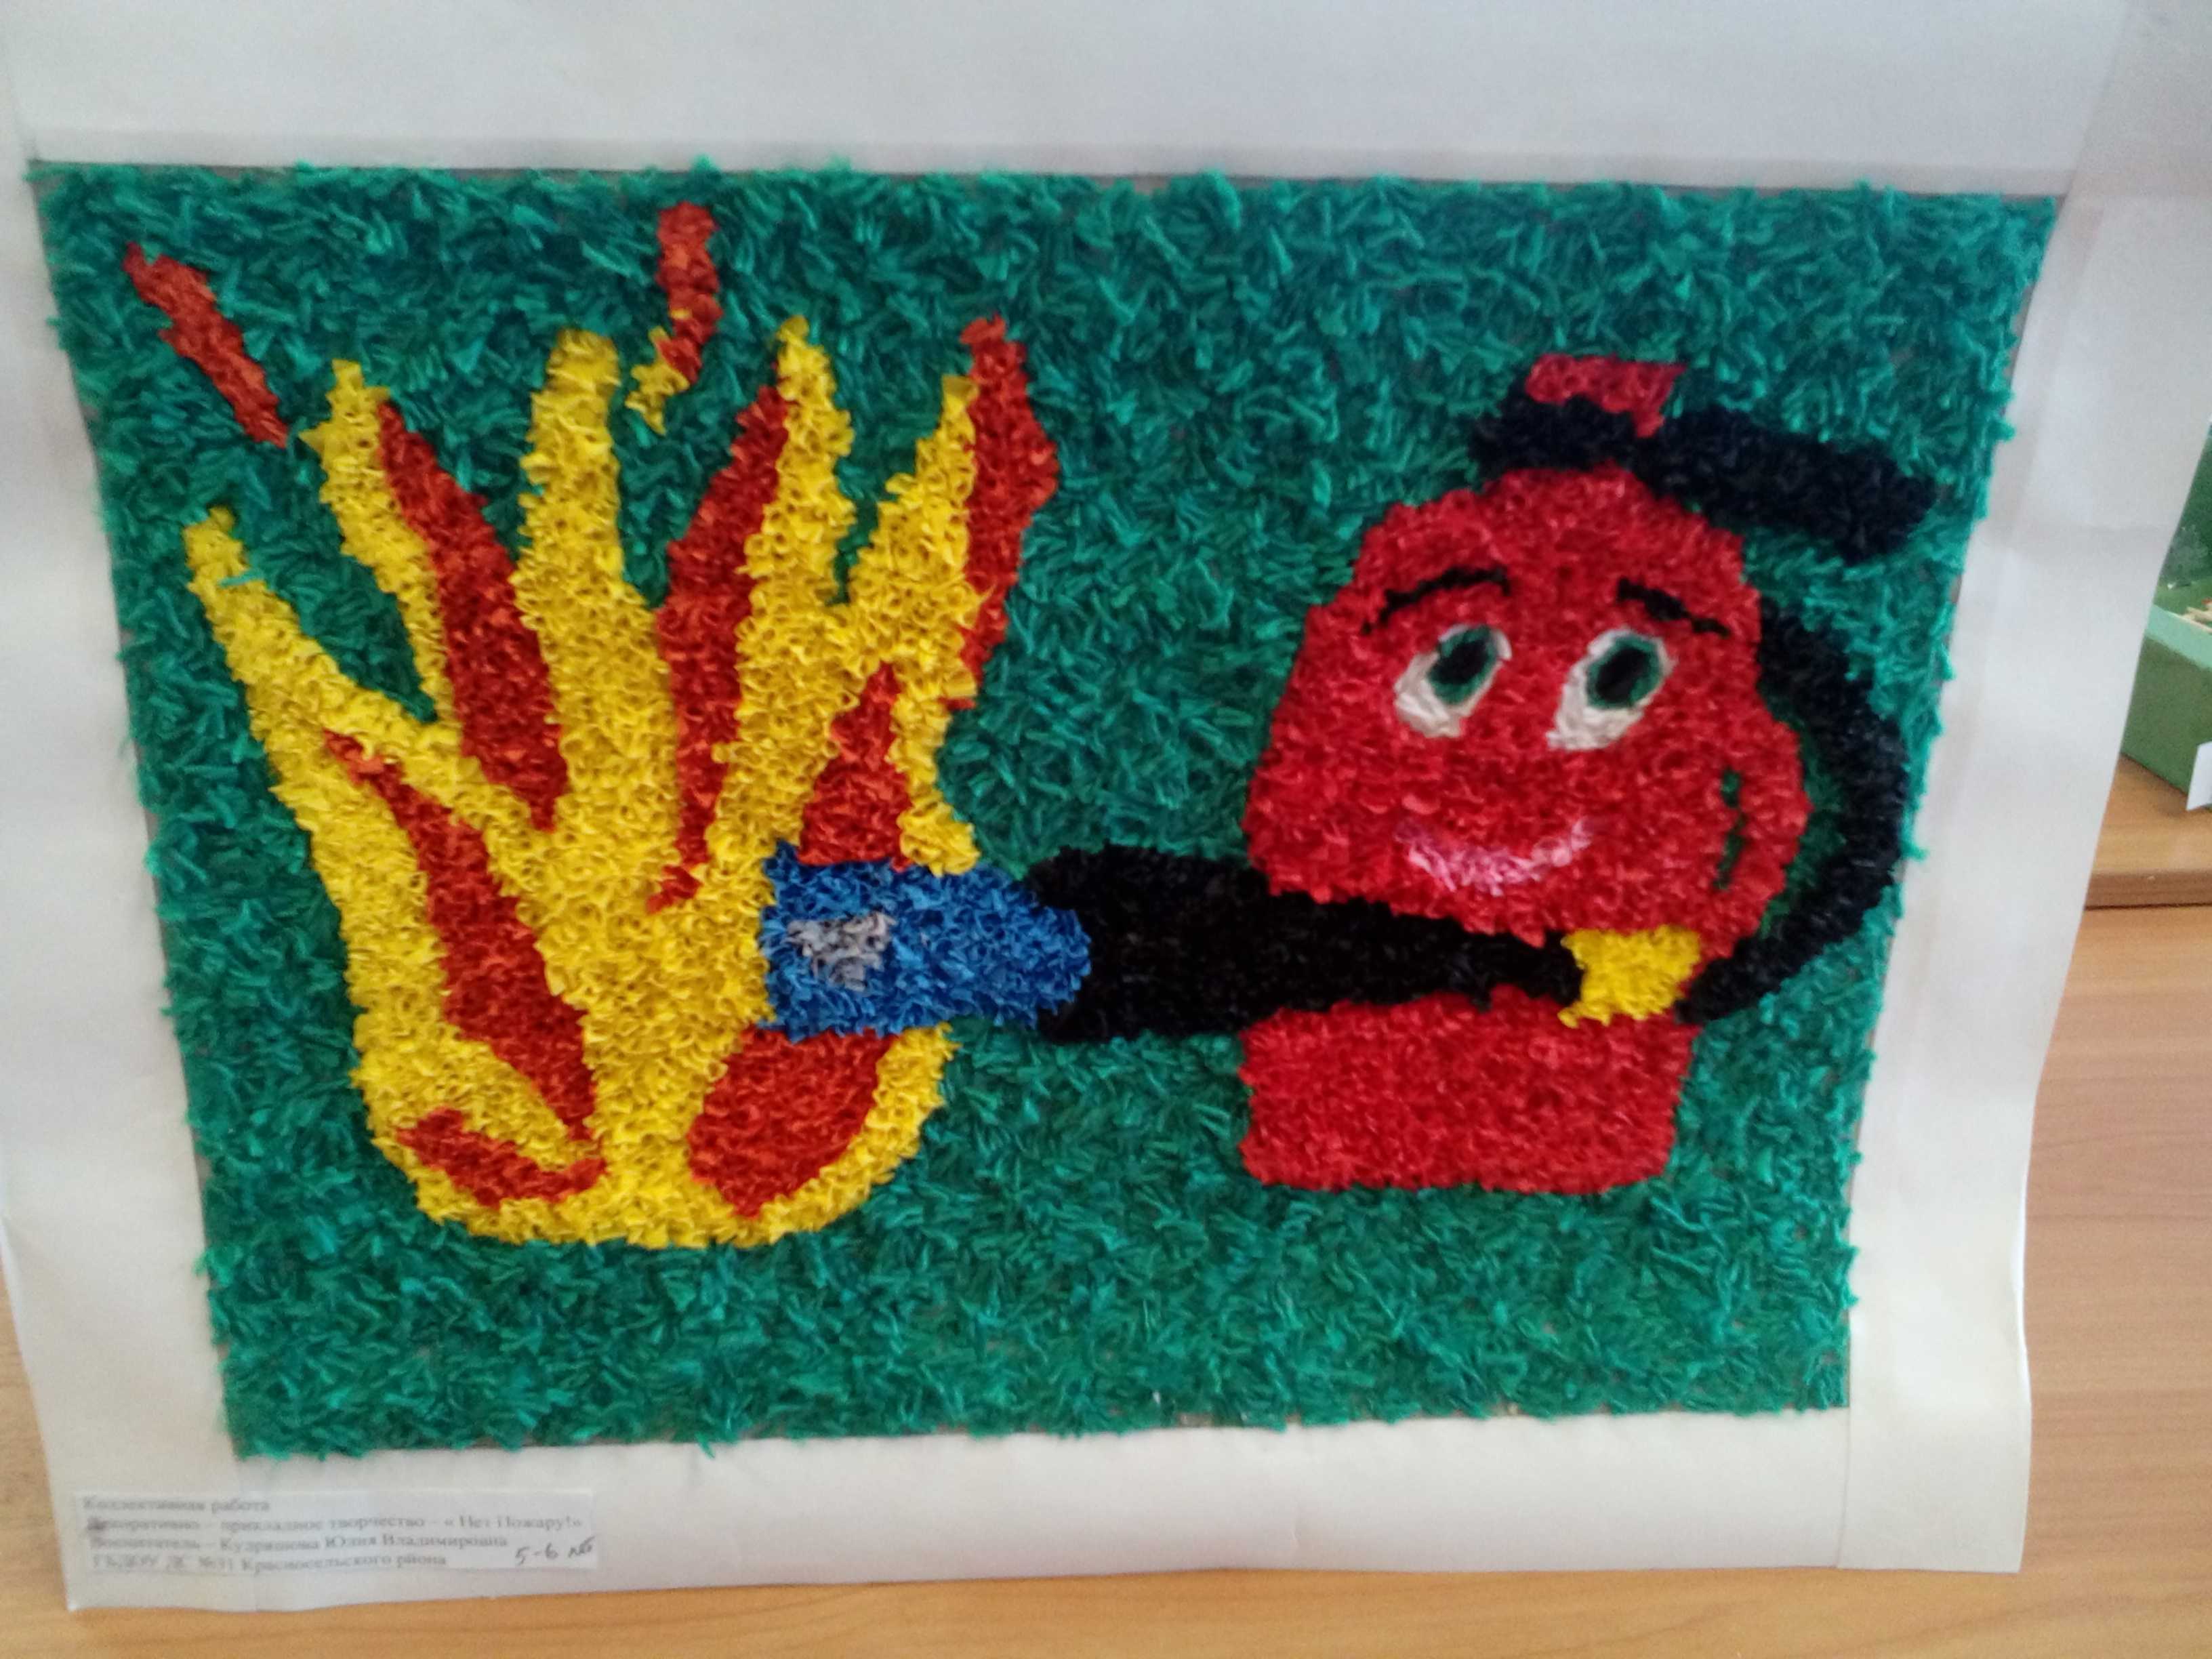 Рисунки на пожарную тематику, про пожарную безопасность для детей